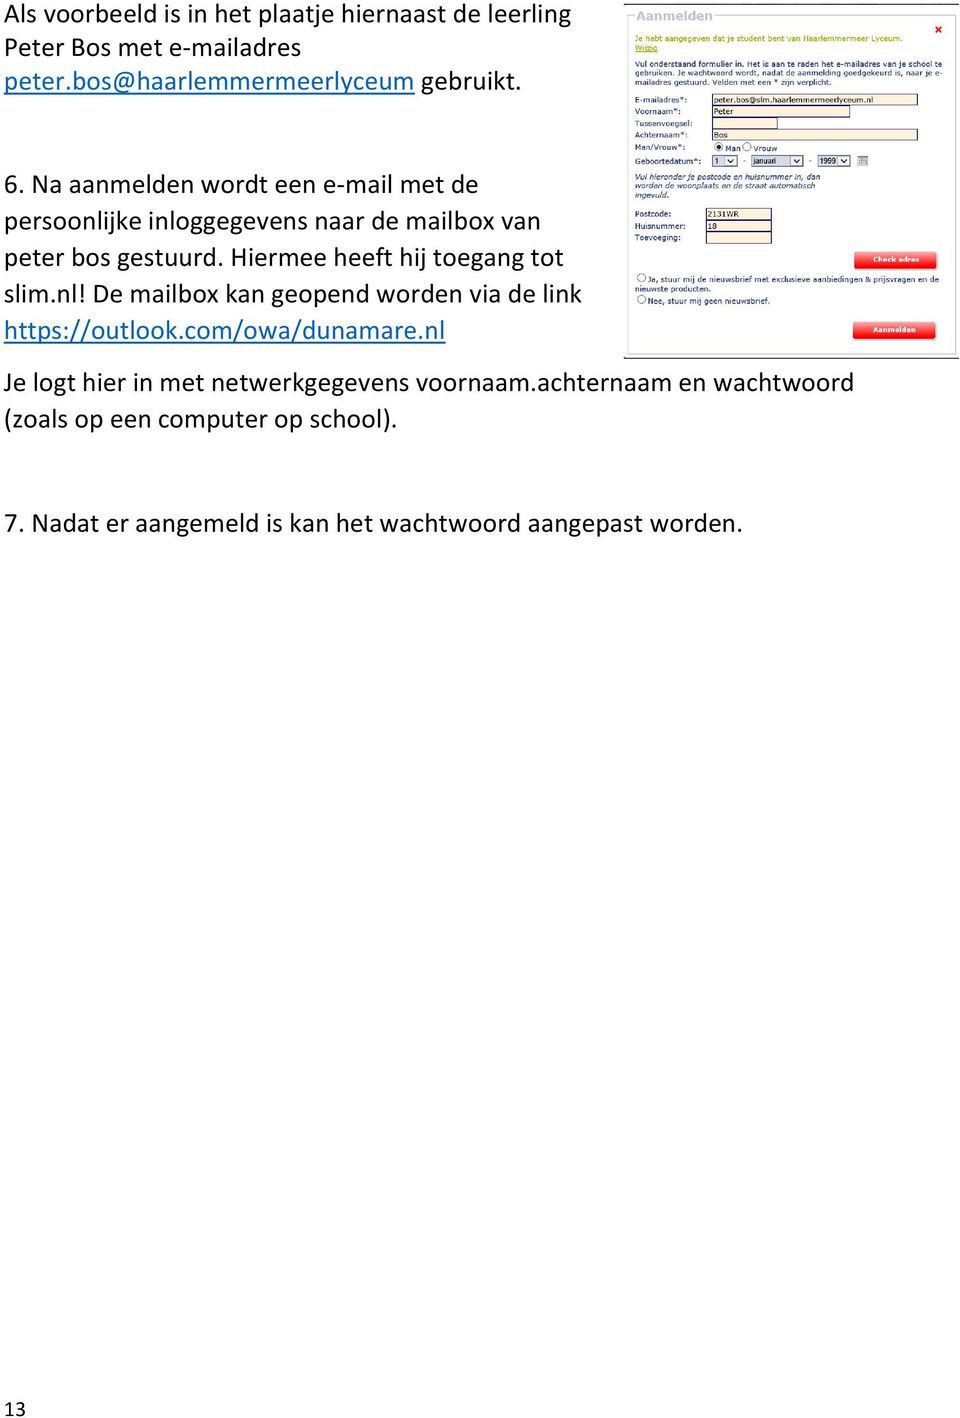 Hiermee heeft hij toegang tot slim.nl! De mailbox kan geopend worden via de link https://outlook.com/owa/dunamare.